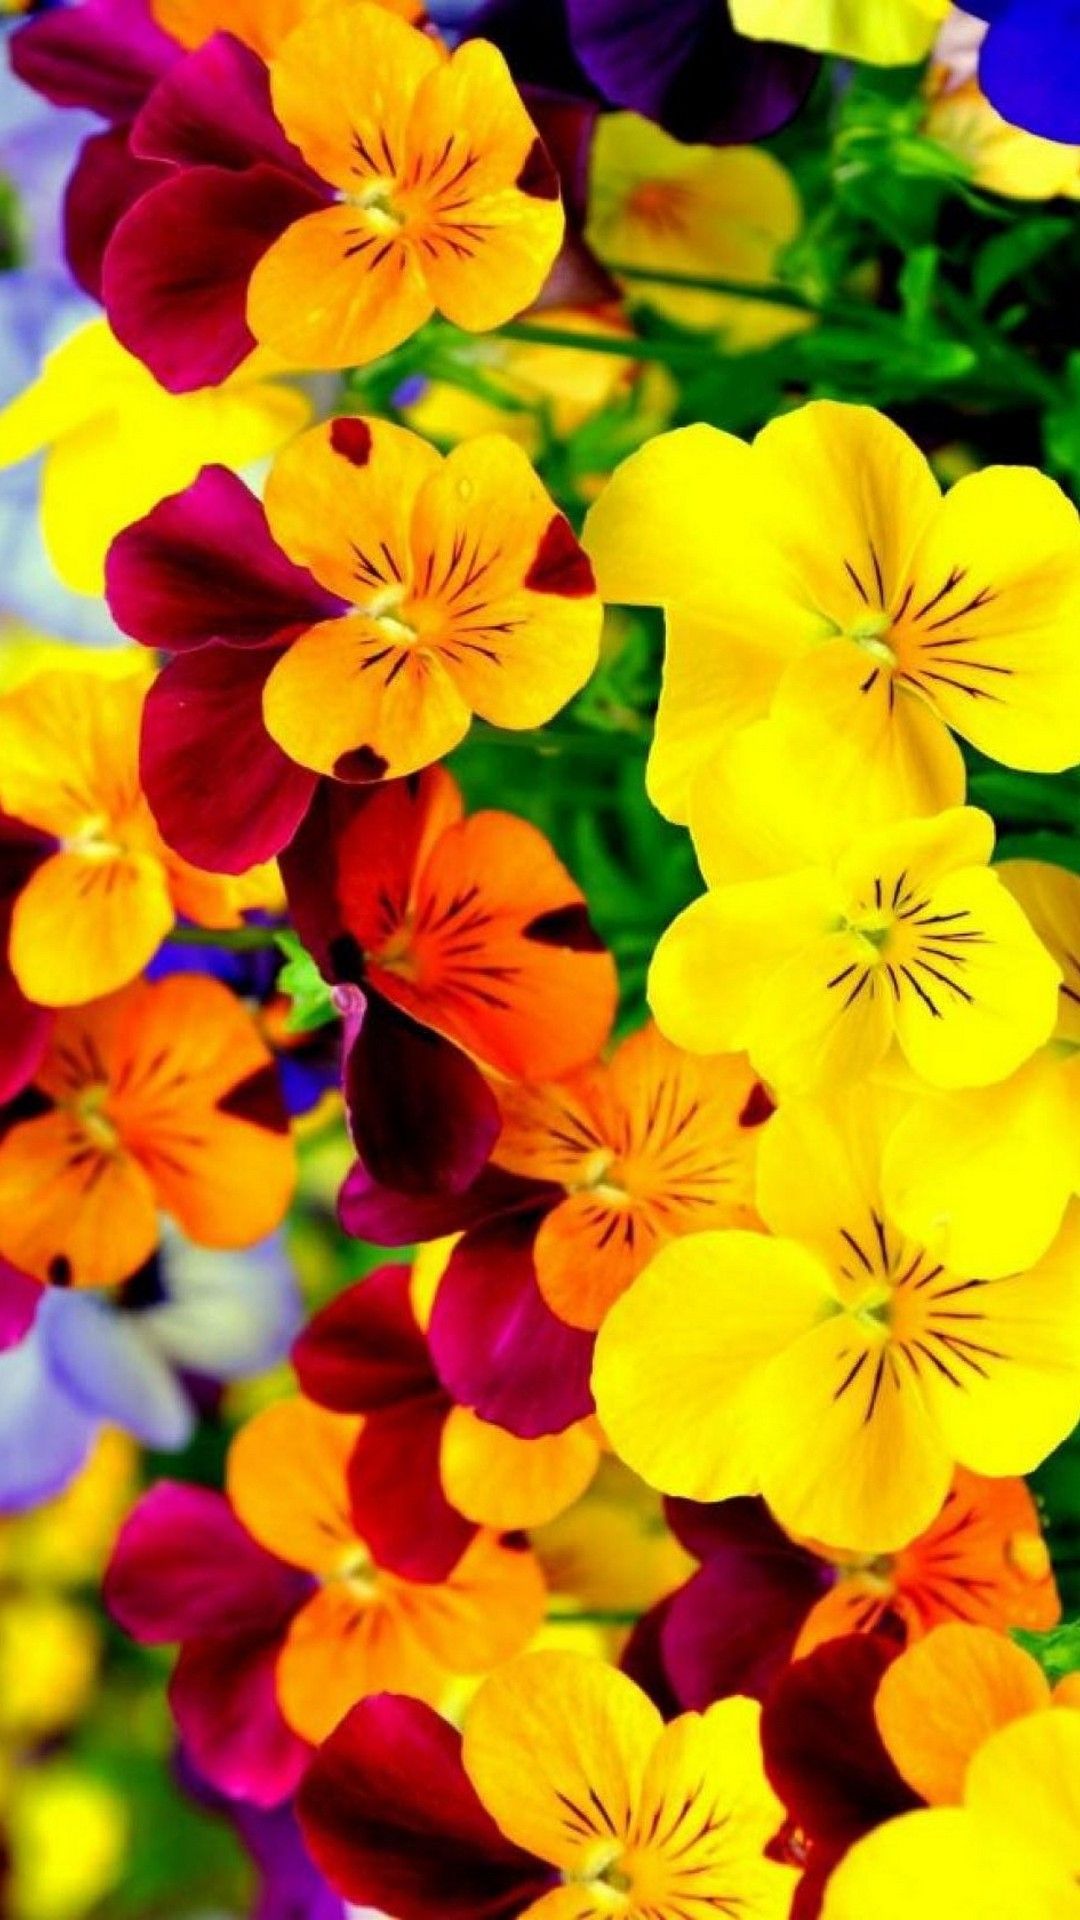 꽃 벽지 아이폰,꽃,꽃 피는 식물,꽃잎,노랑,식물